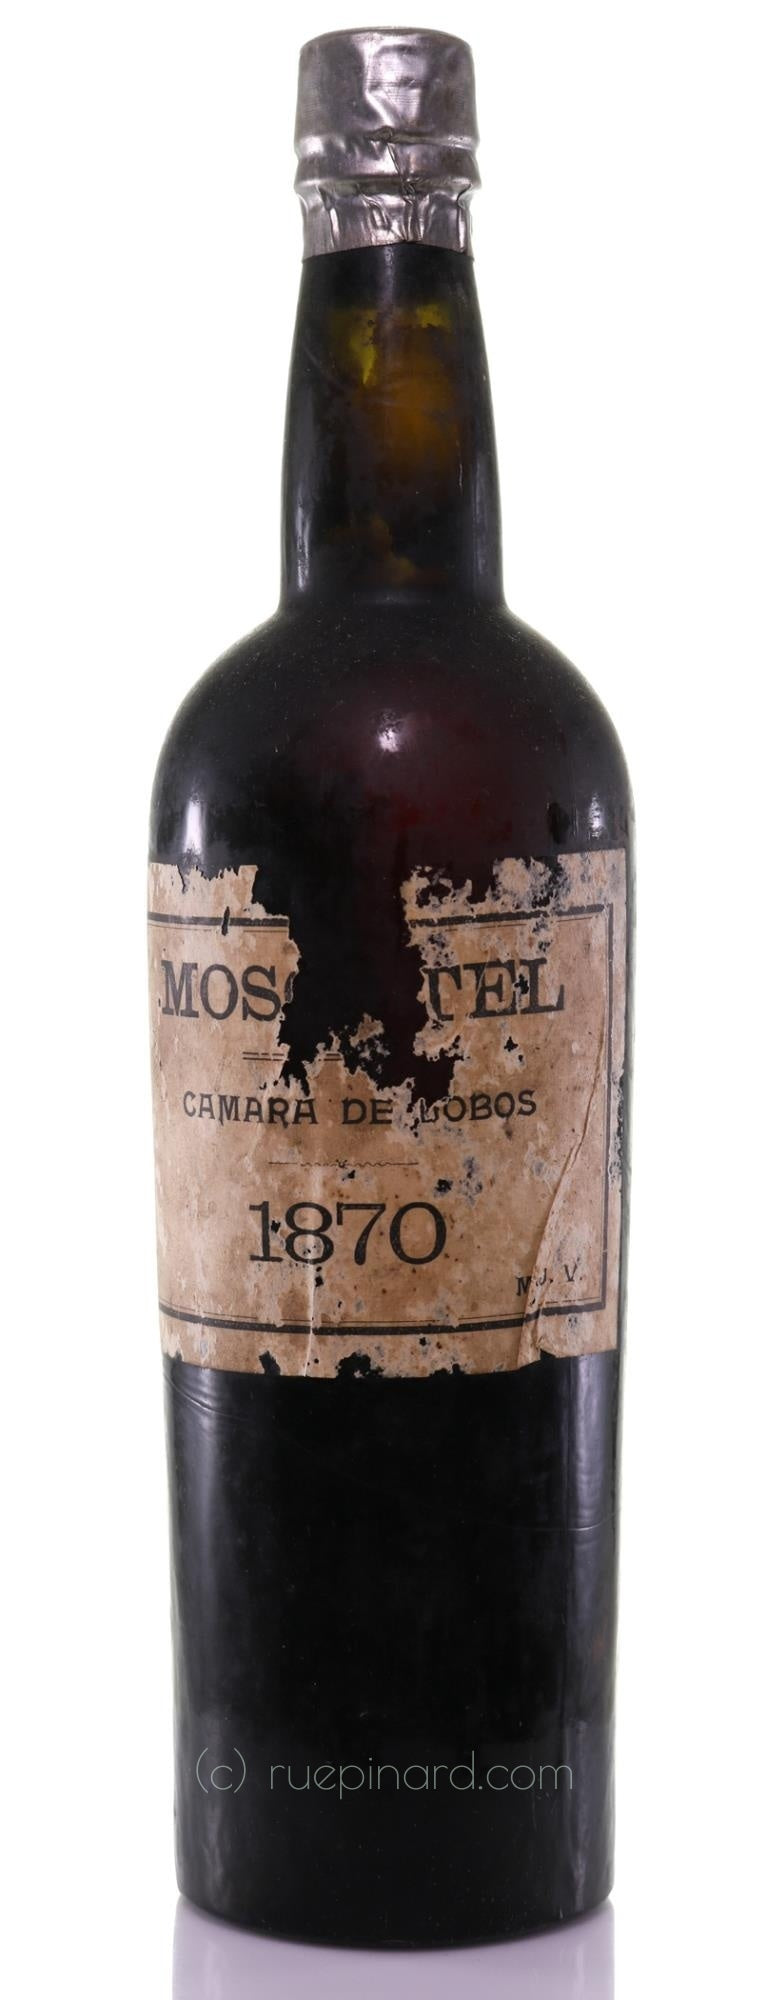 MJV Moscatel 1870, Madeira, Câmara de Lobos. - Rue Pinard